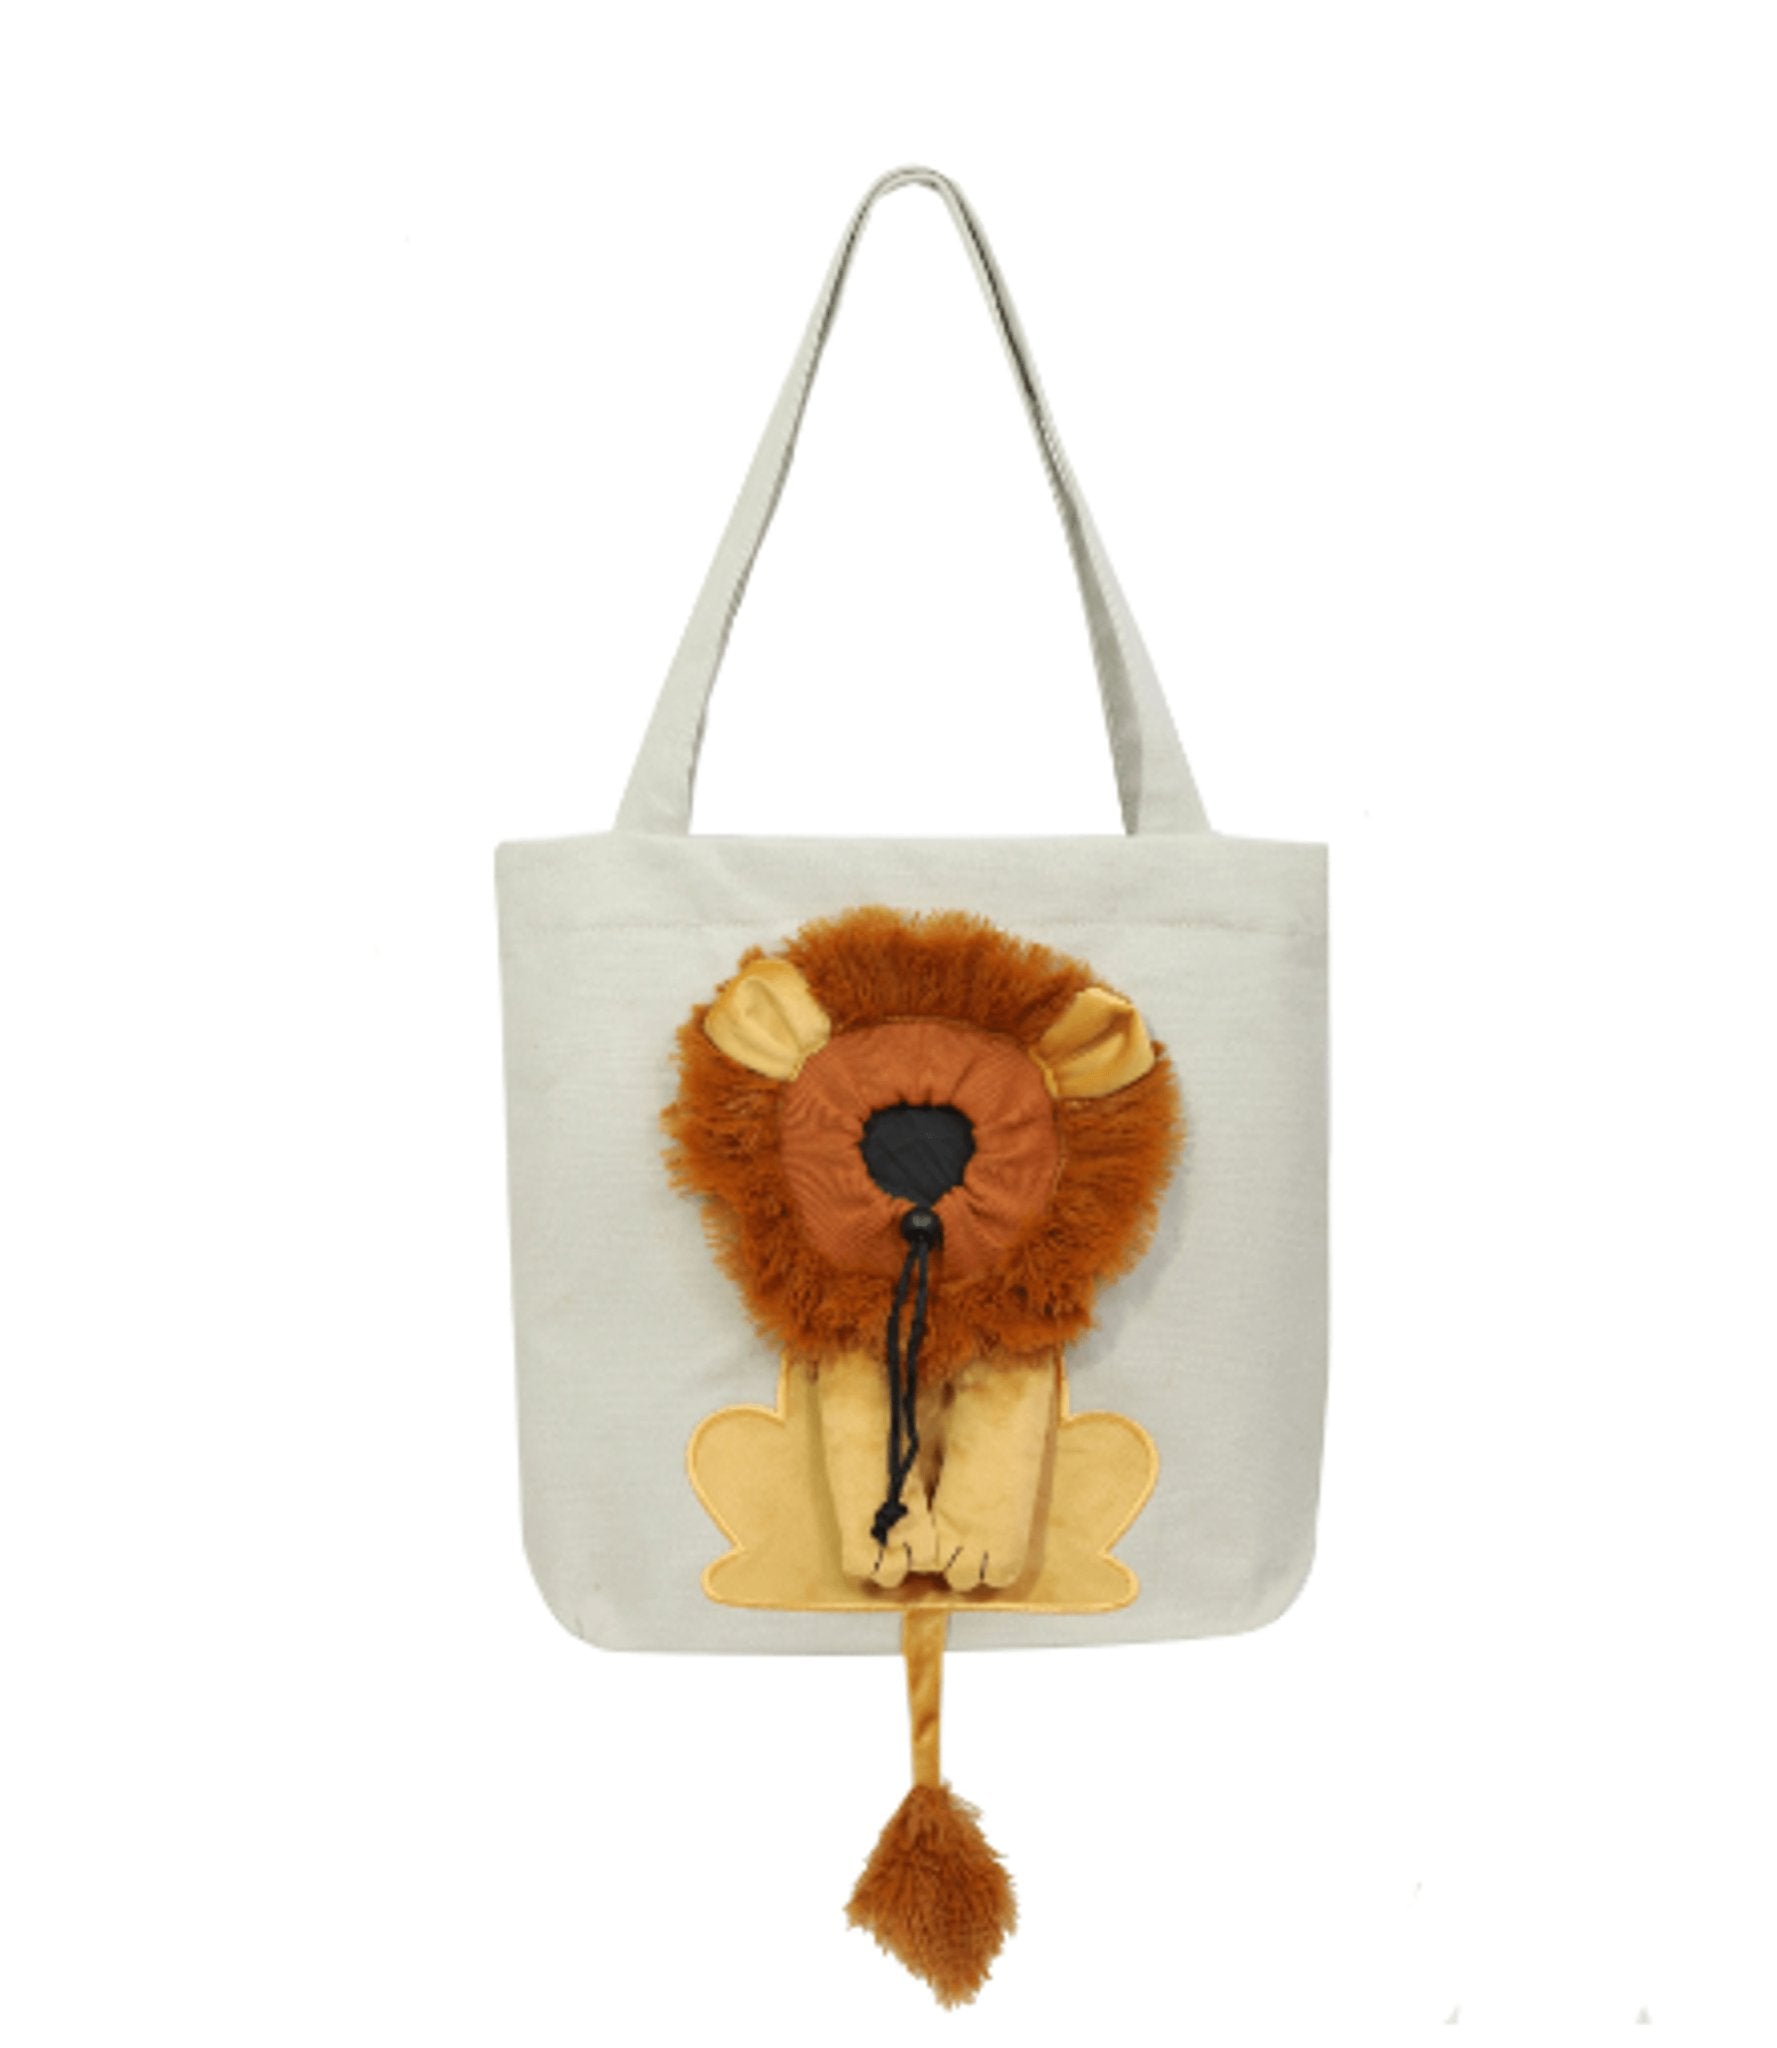 Soft Pet Carriers Lion Design Portable Breathable Bag - ItemBear.com